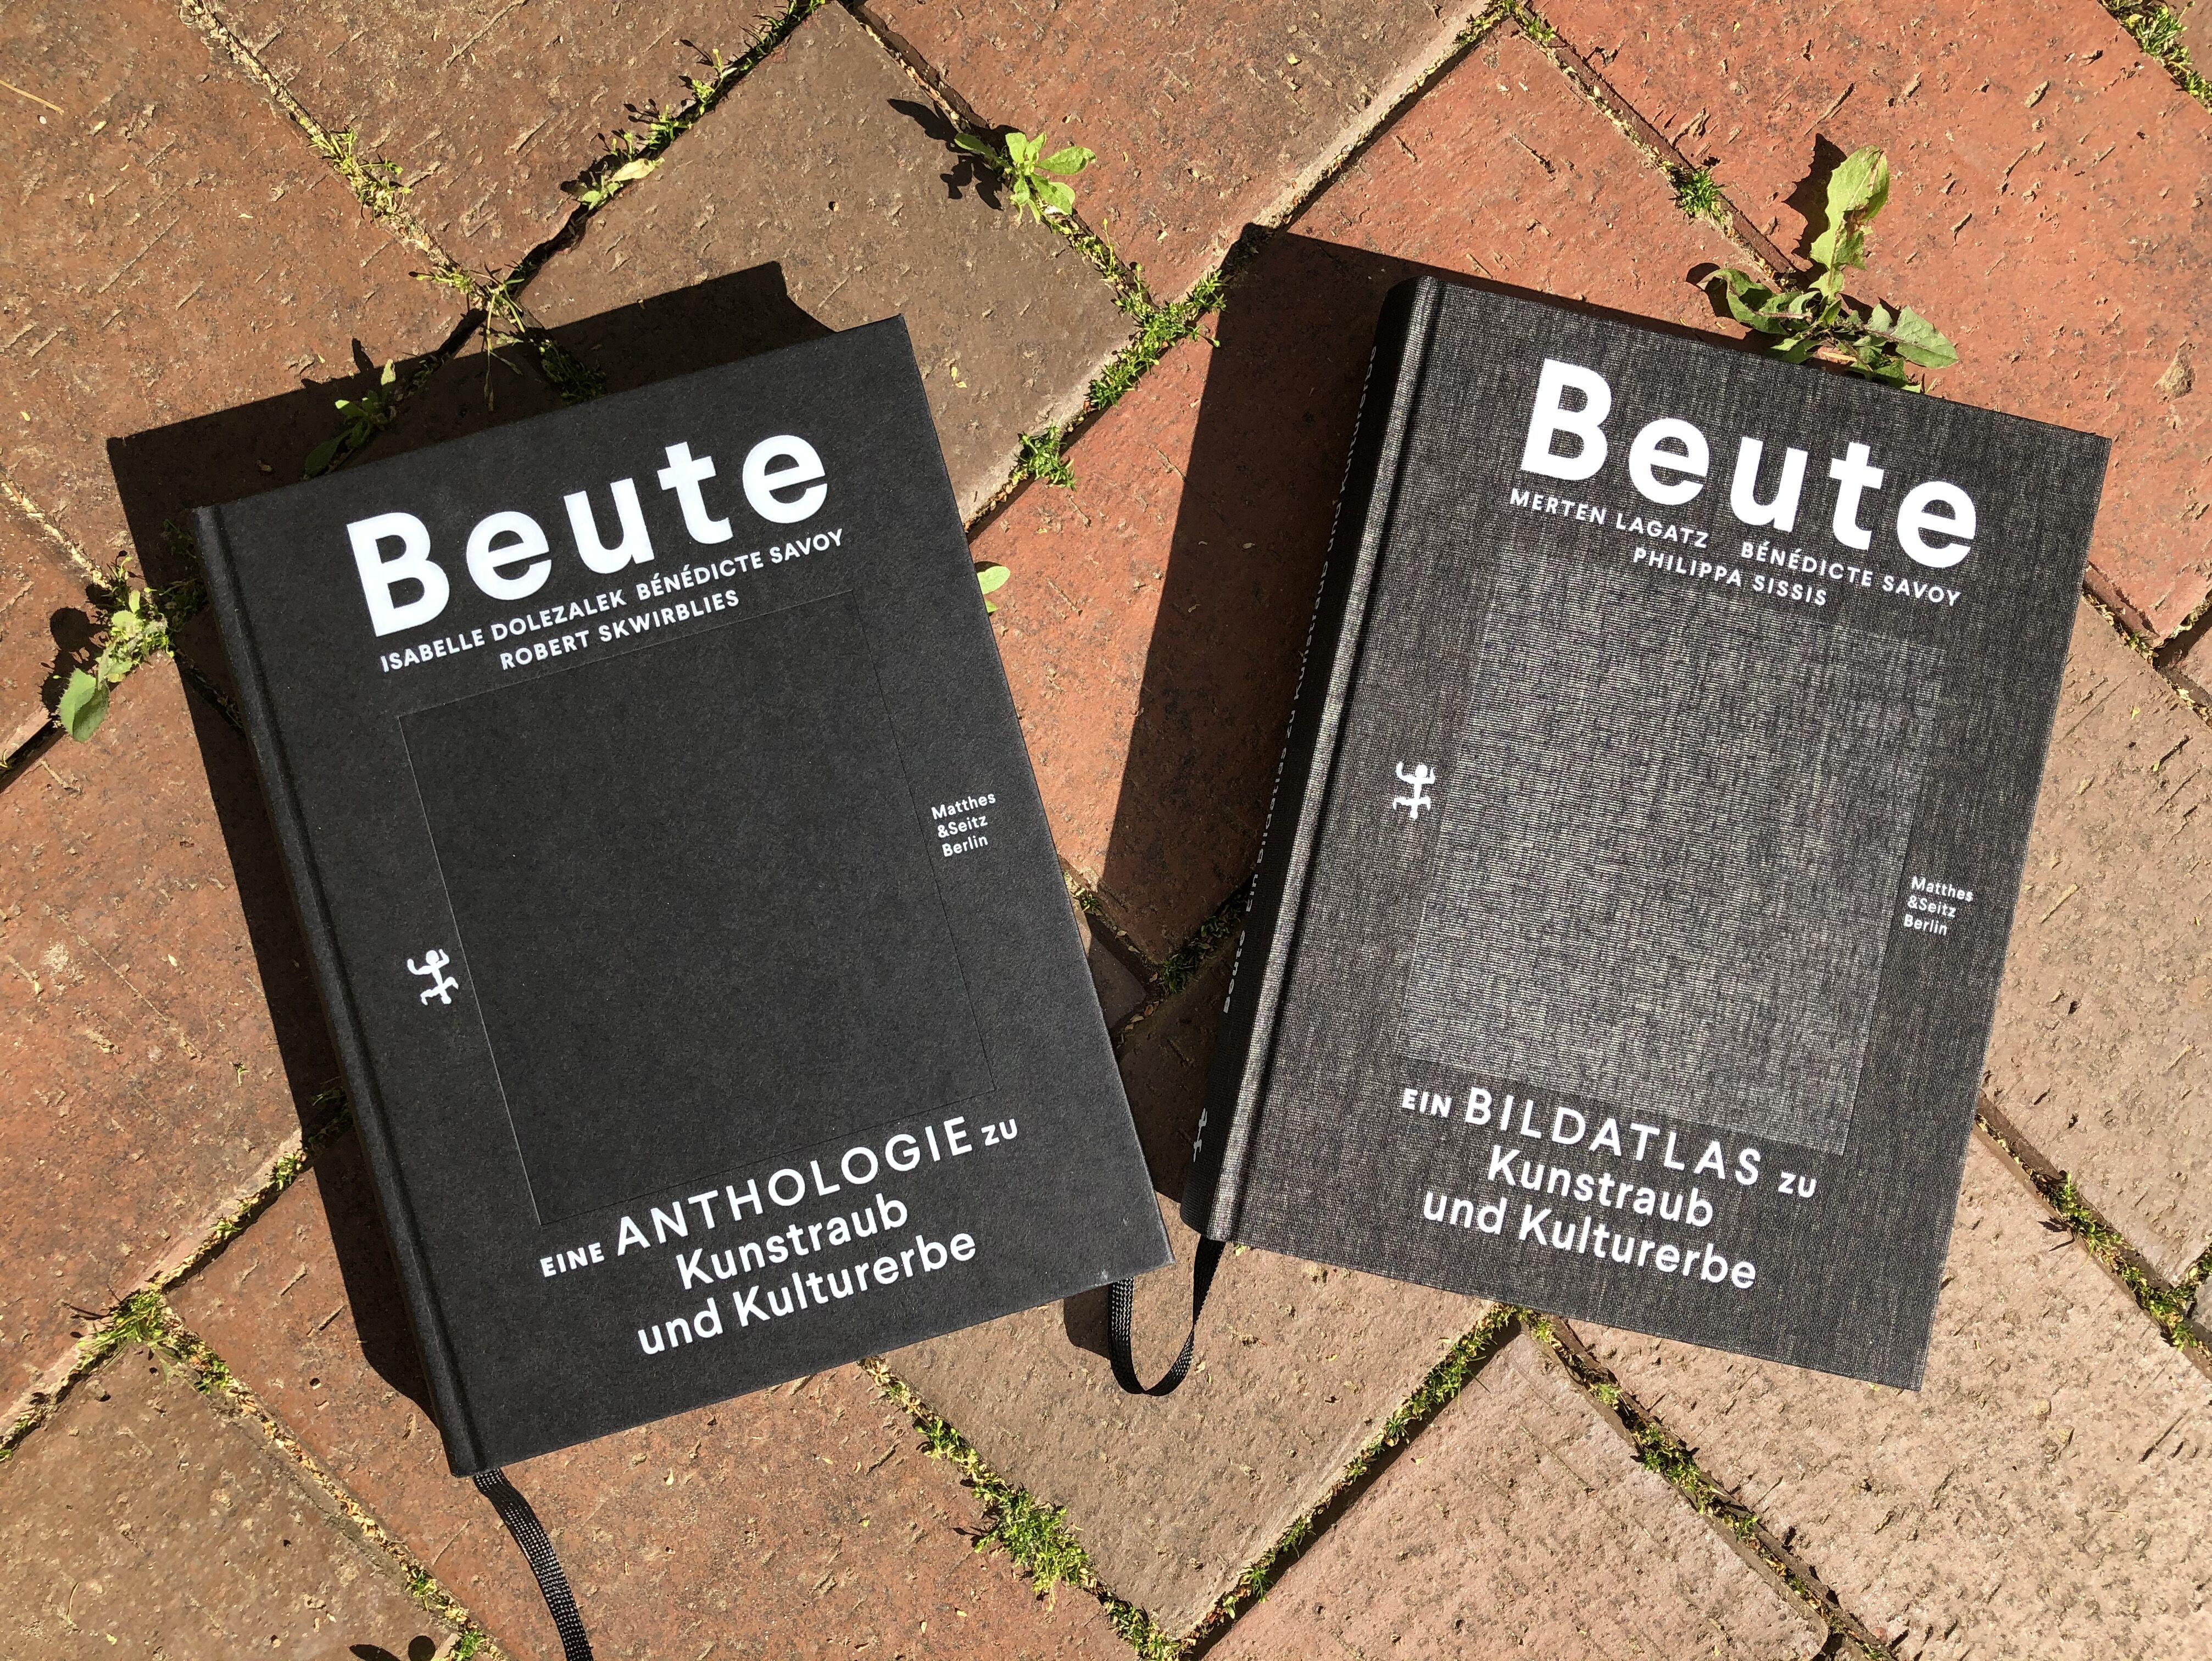 Beute – Die Antologie und der Bildaltas, ©Isabelle-Dolezalek, 2021